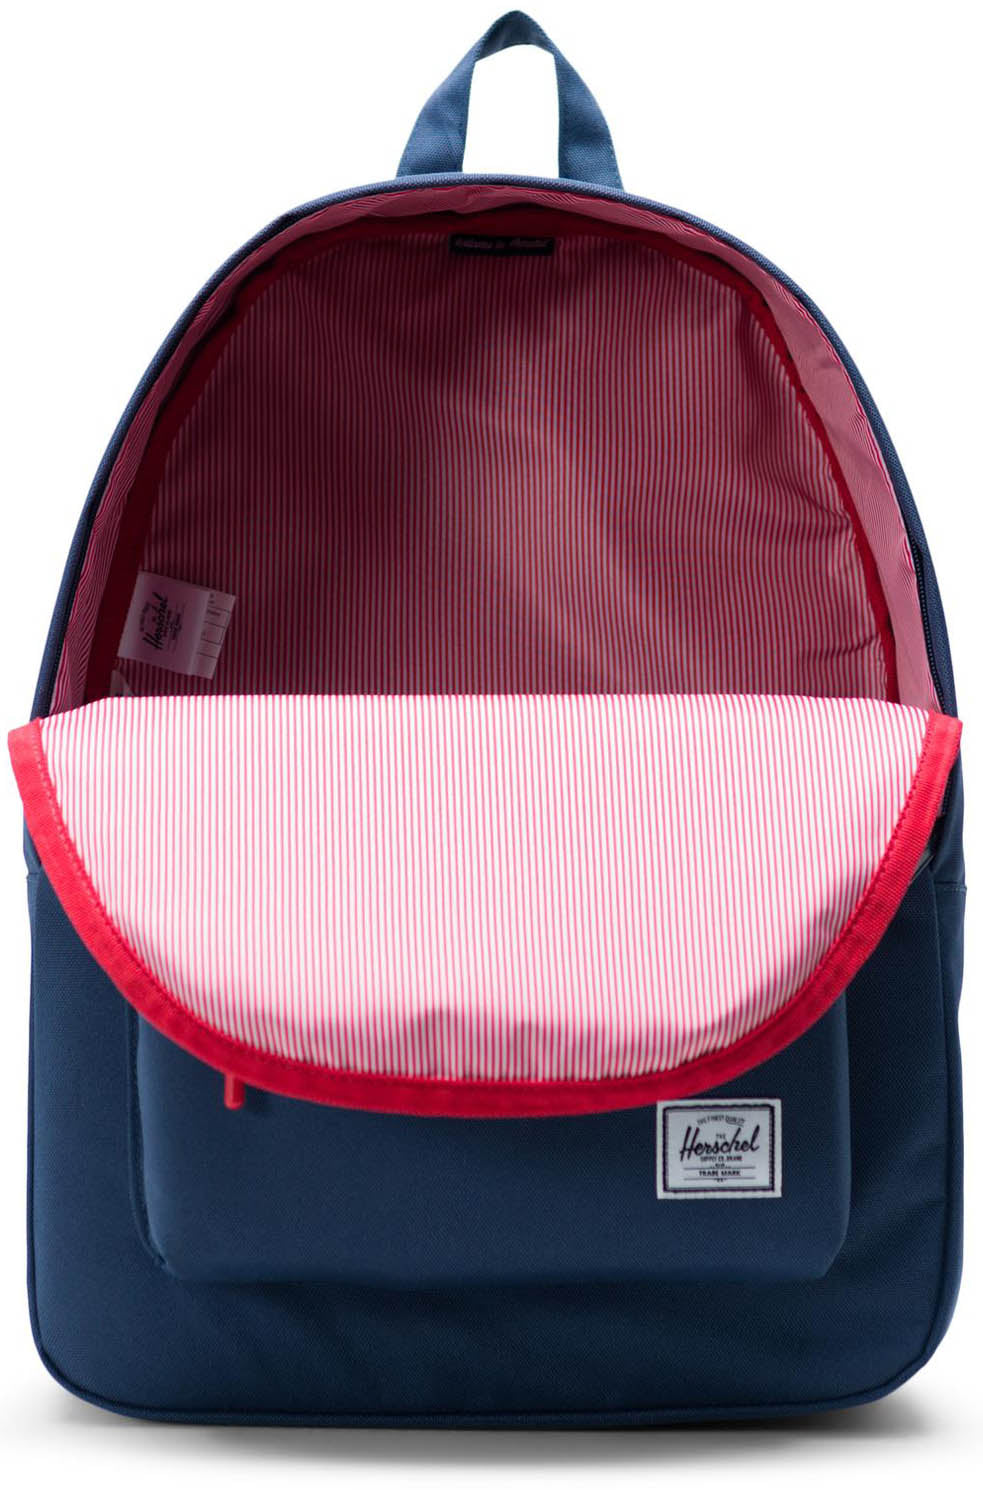 Herschel Classic Backpack - Navy